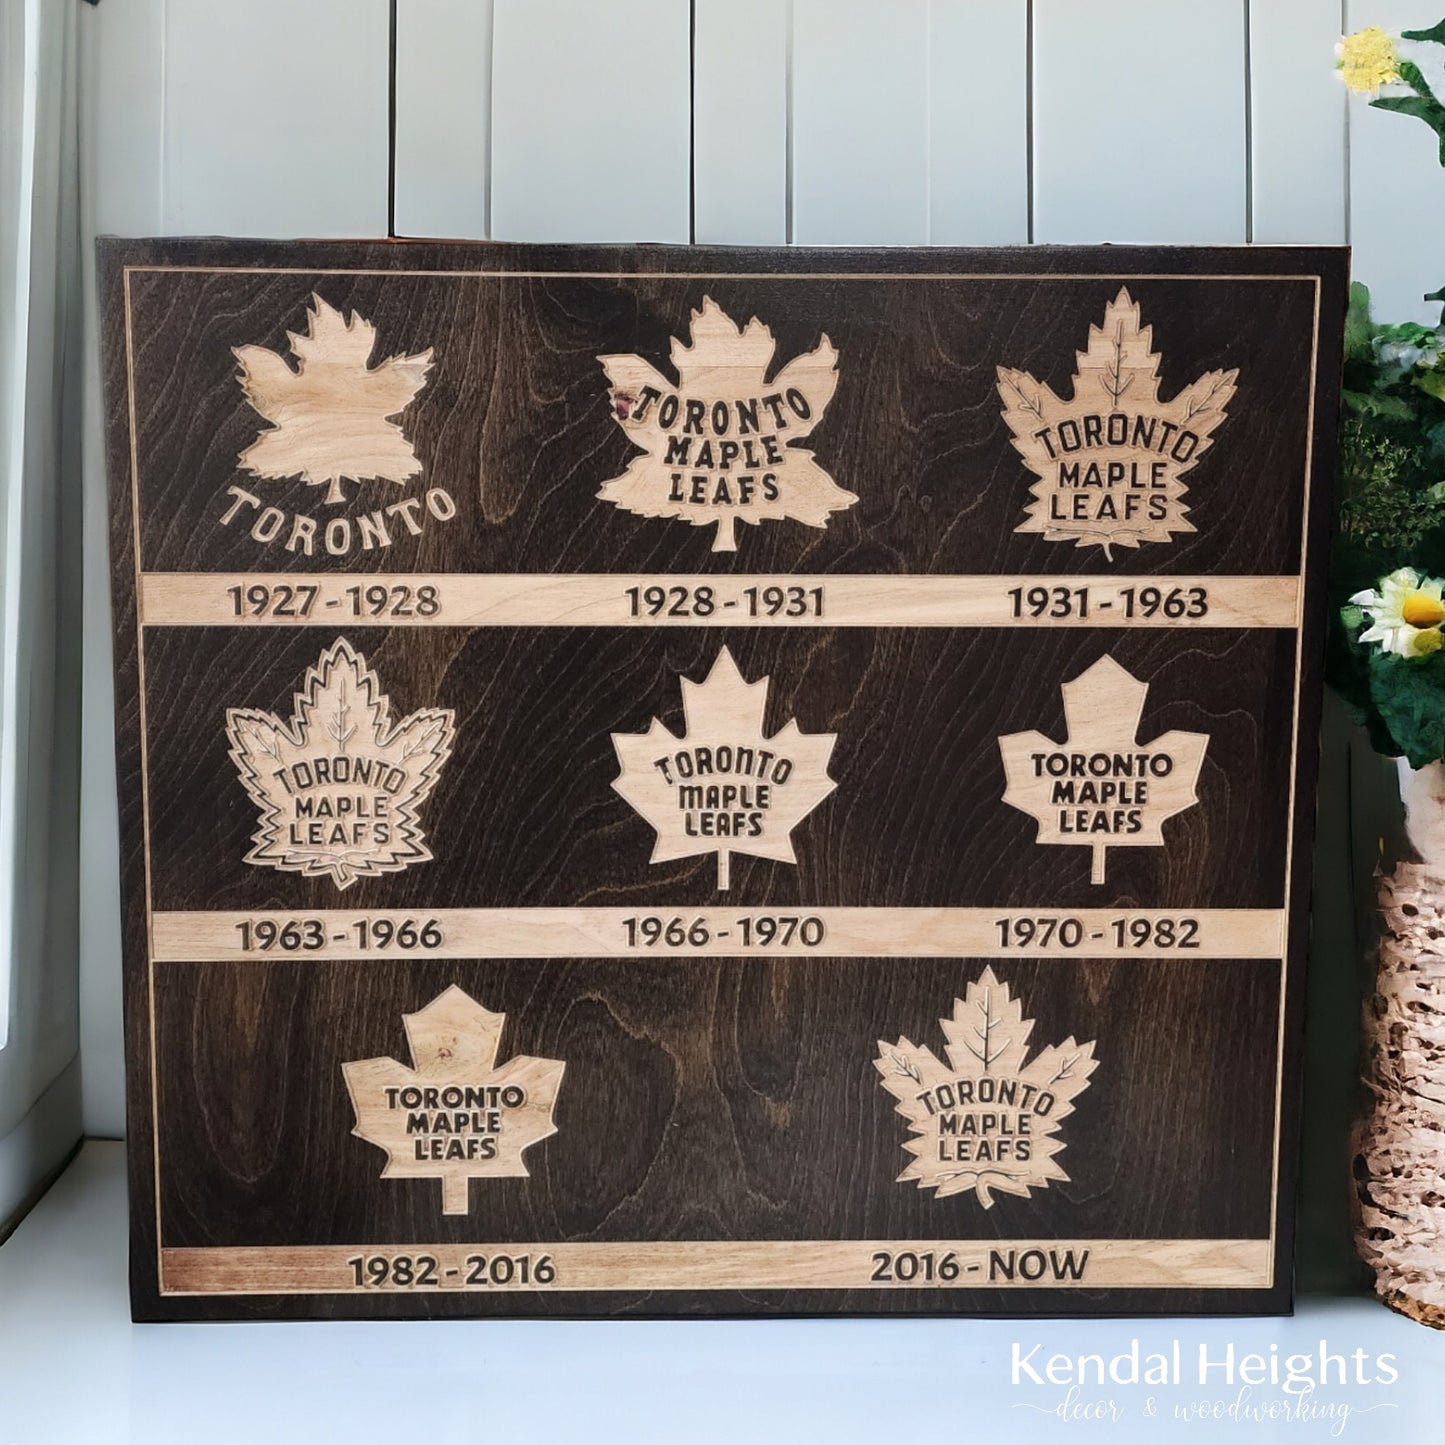 Toronto Maple Leaf - History